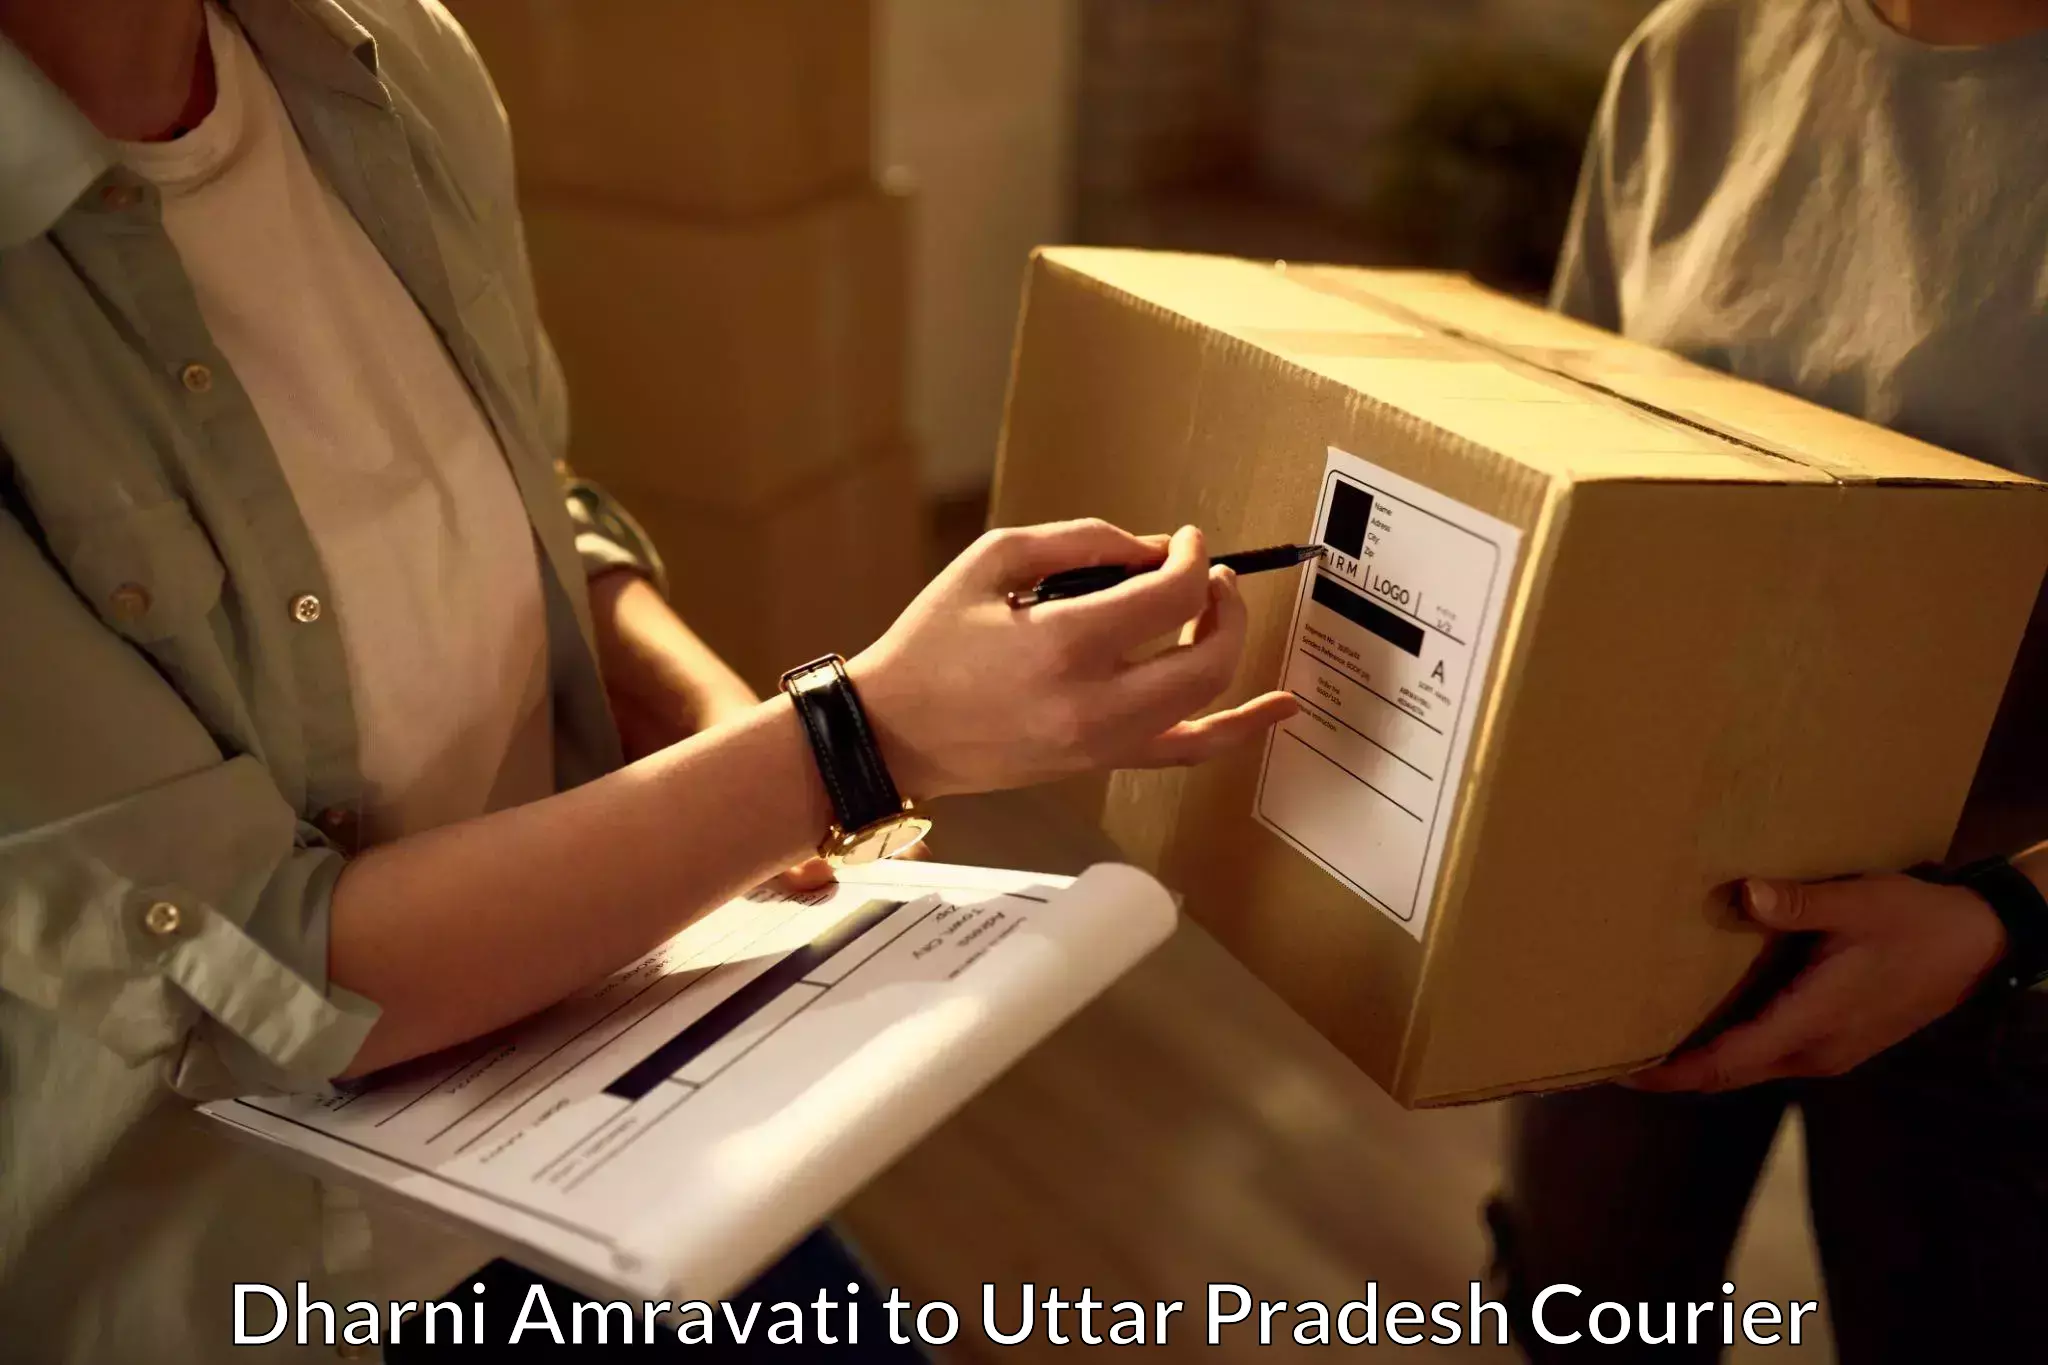 Pharmaceutical courier Dharni Amravati to Uttar Pradesh